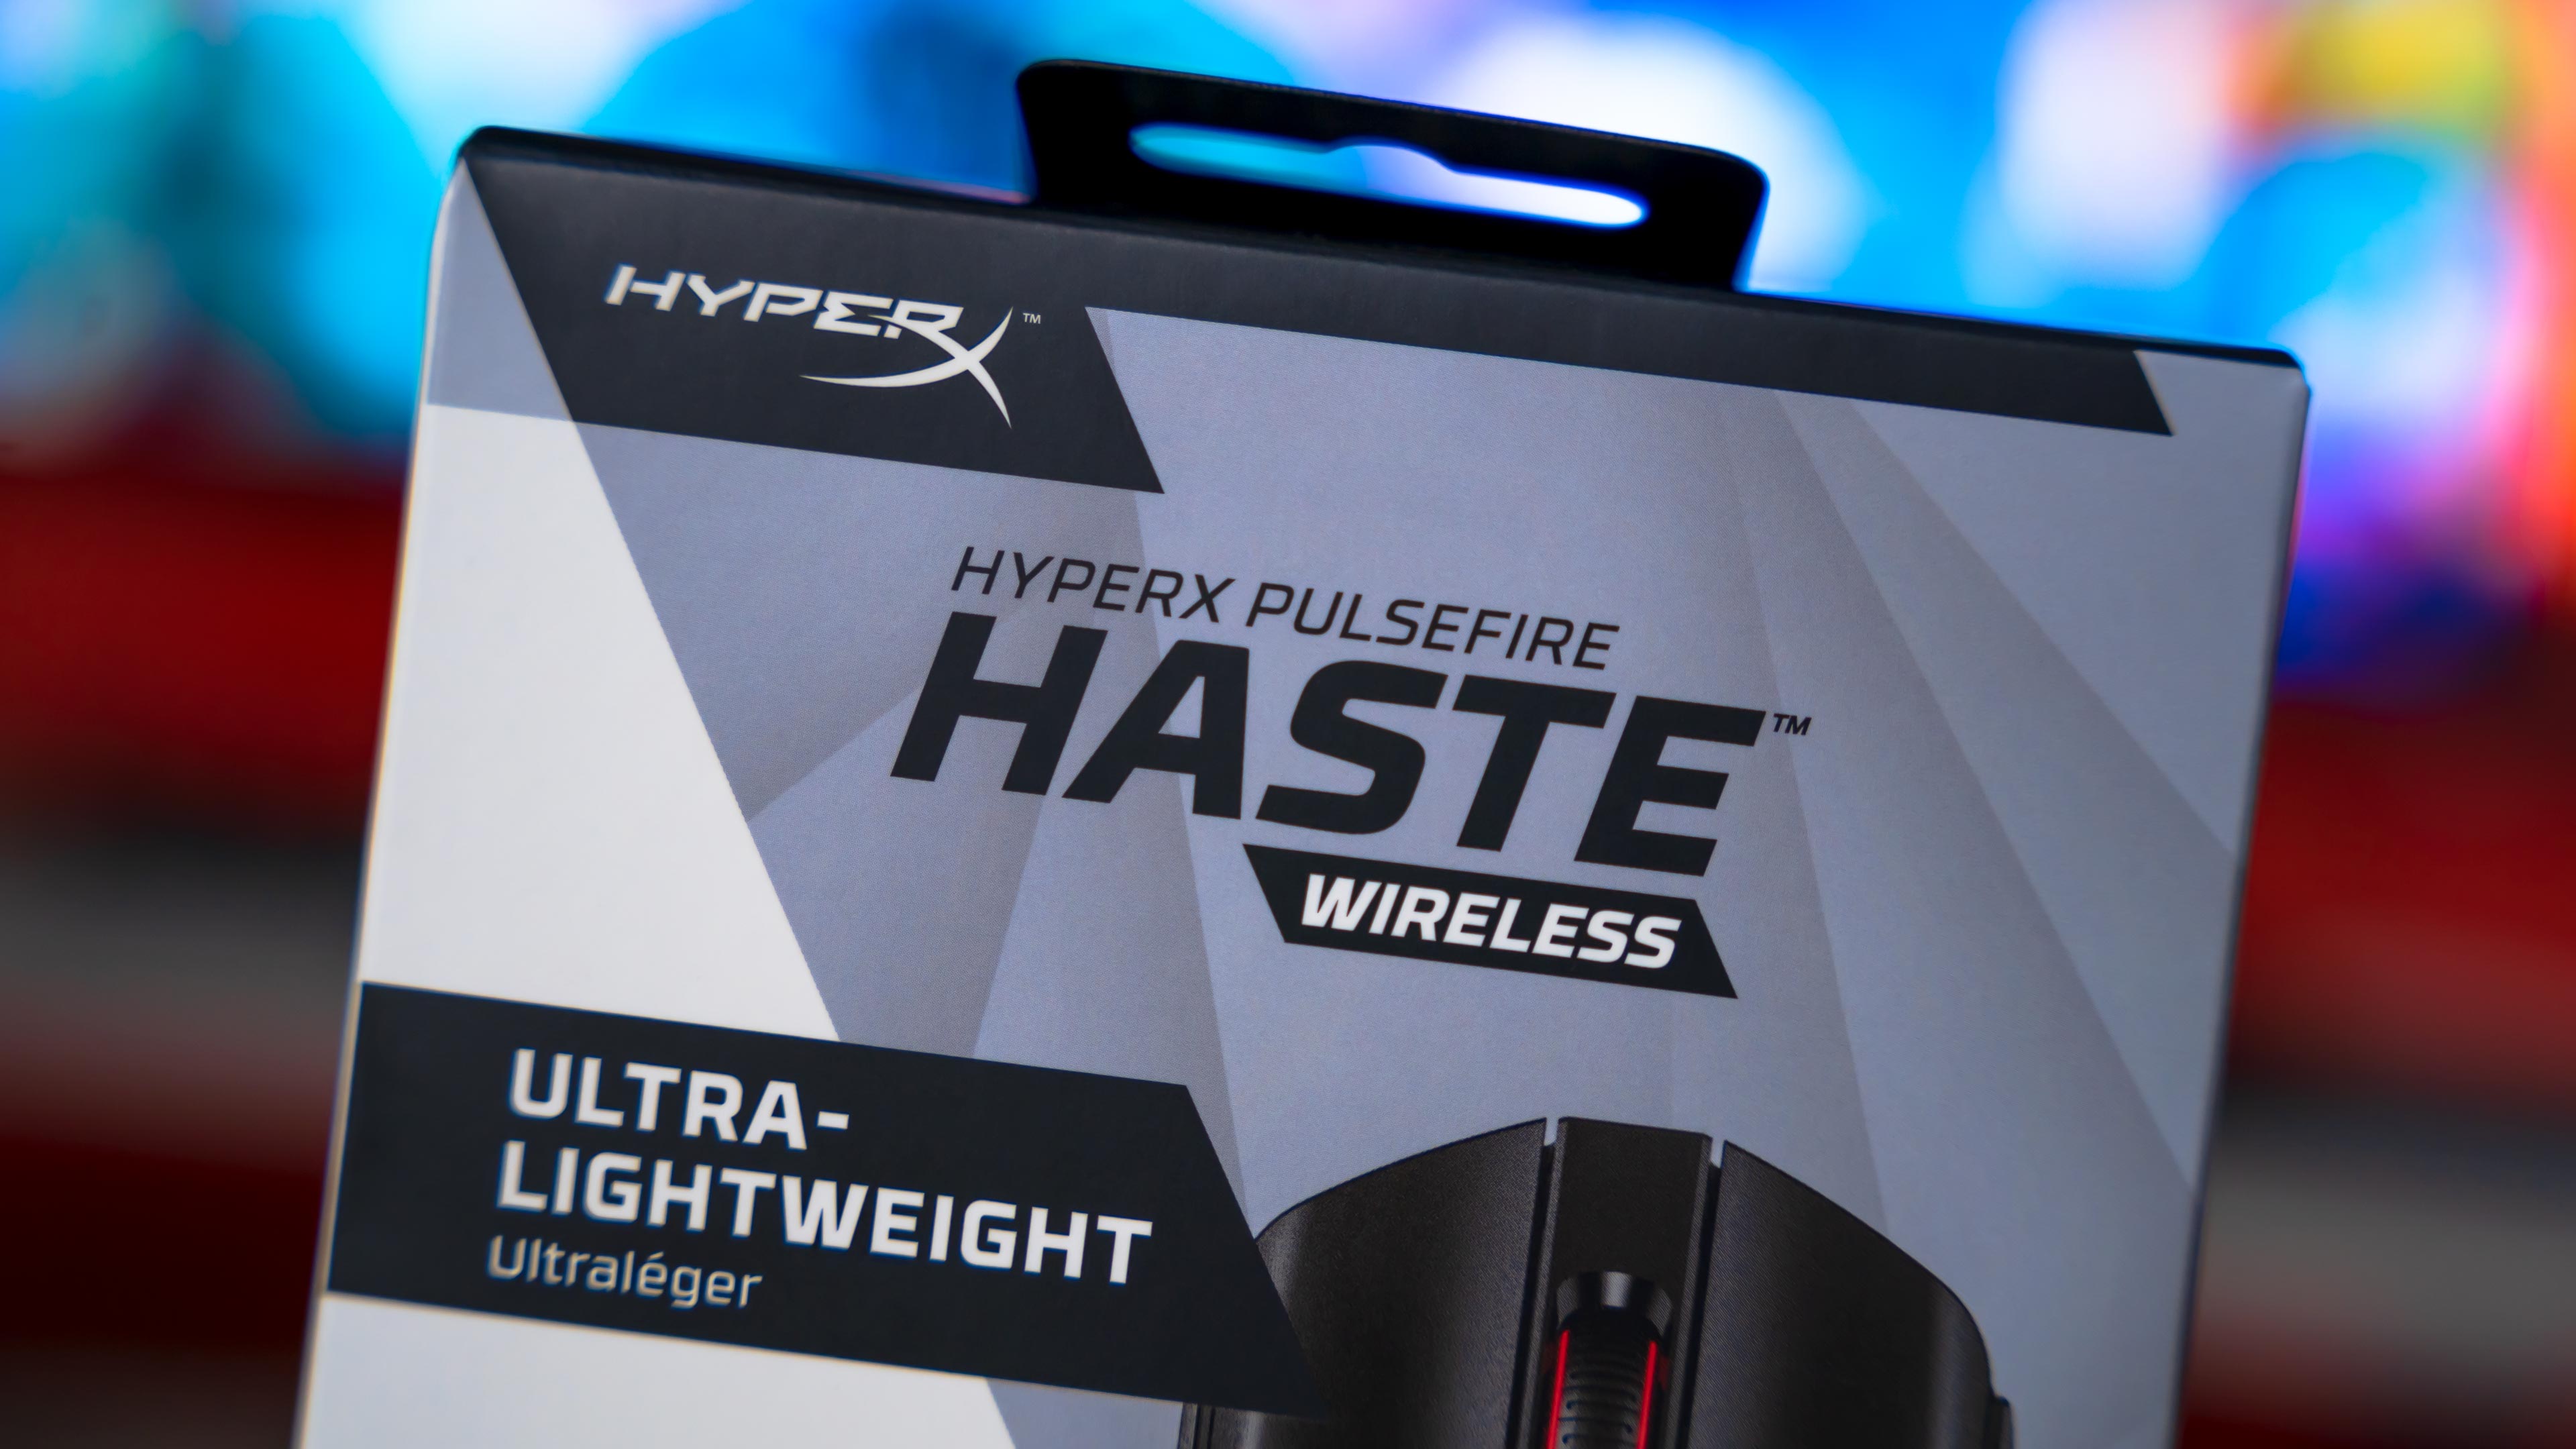 HyperX Pulsefire Haste Wireless Box (2)